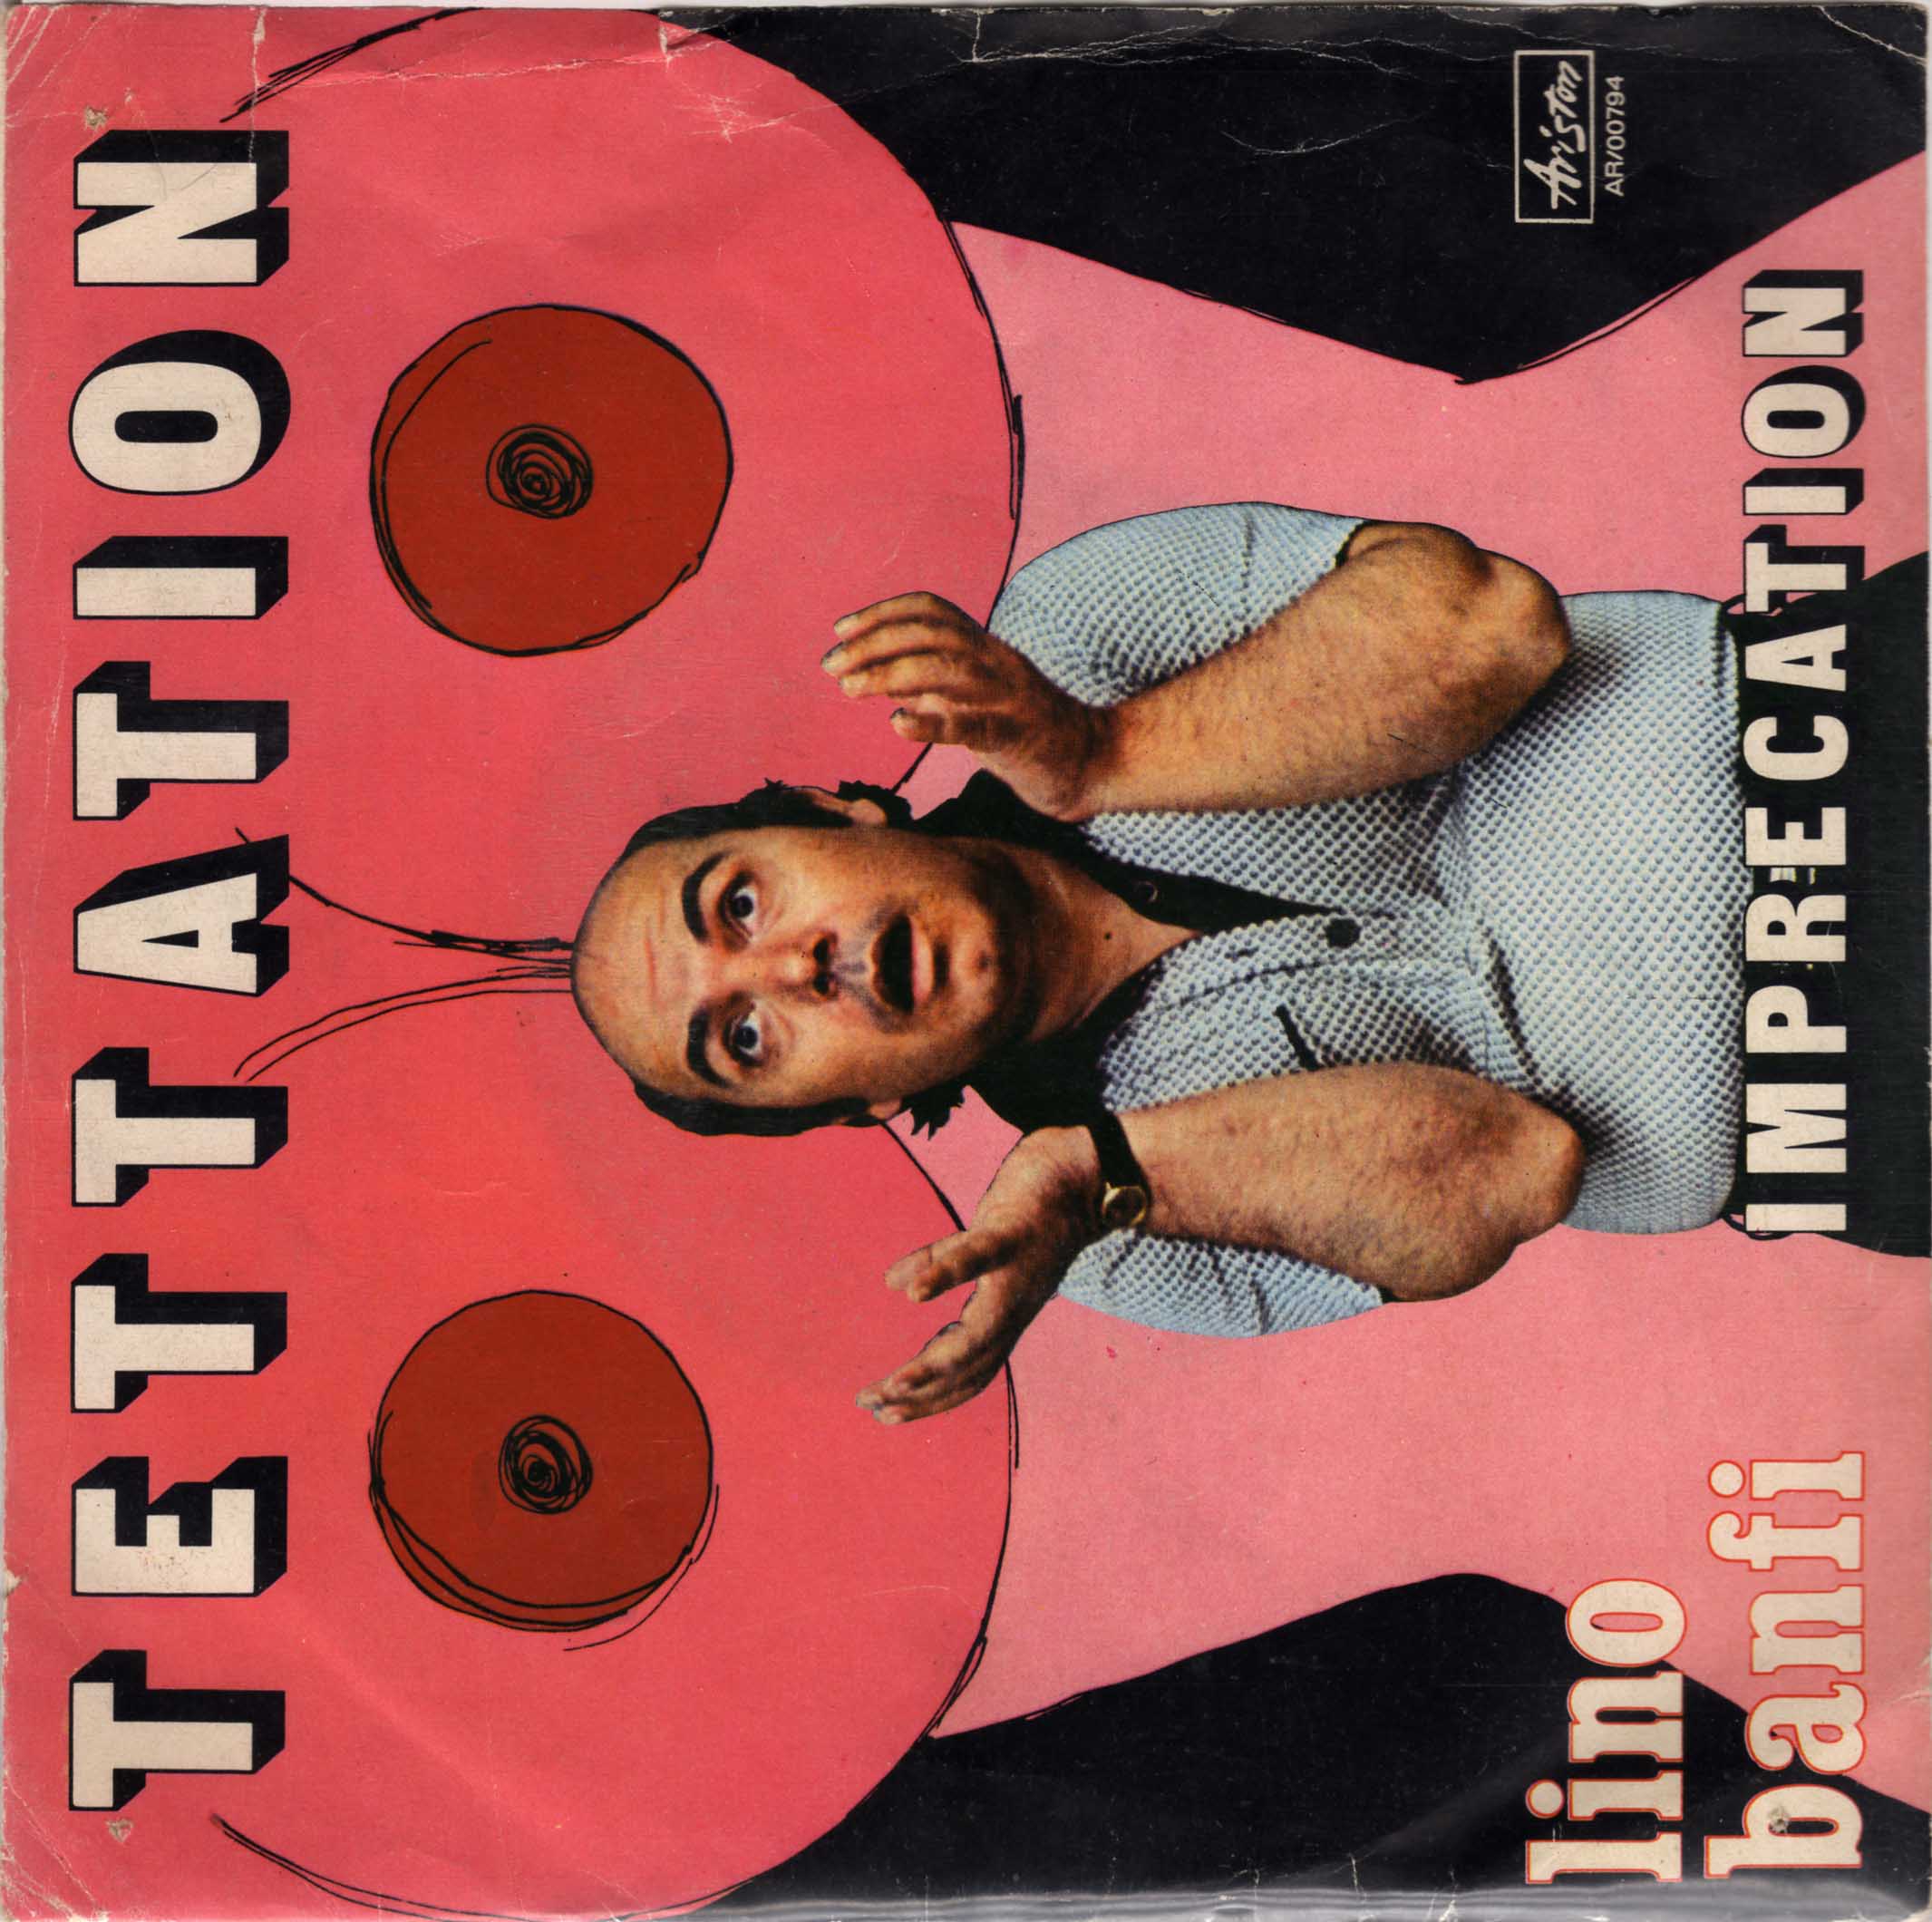 Lino Banfi – Tettation (45 giri)